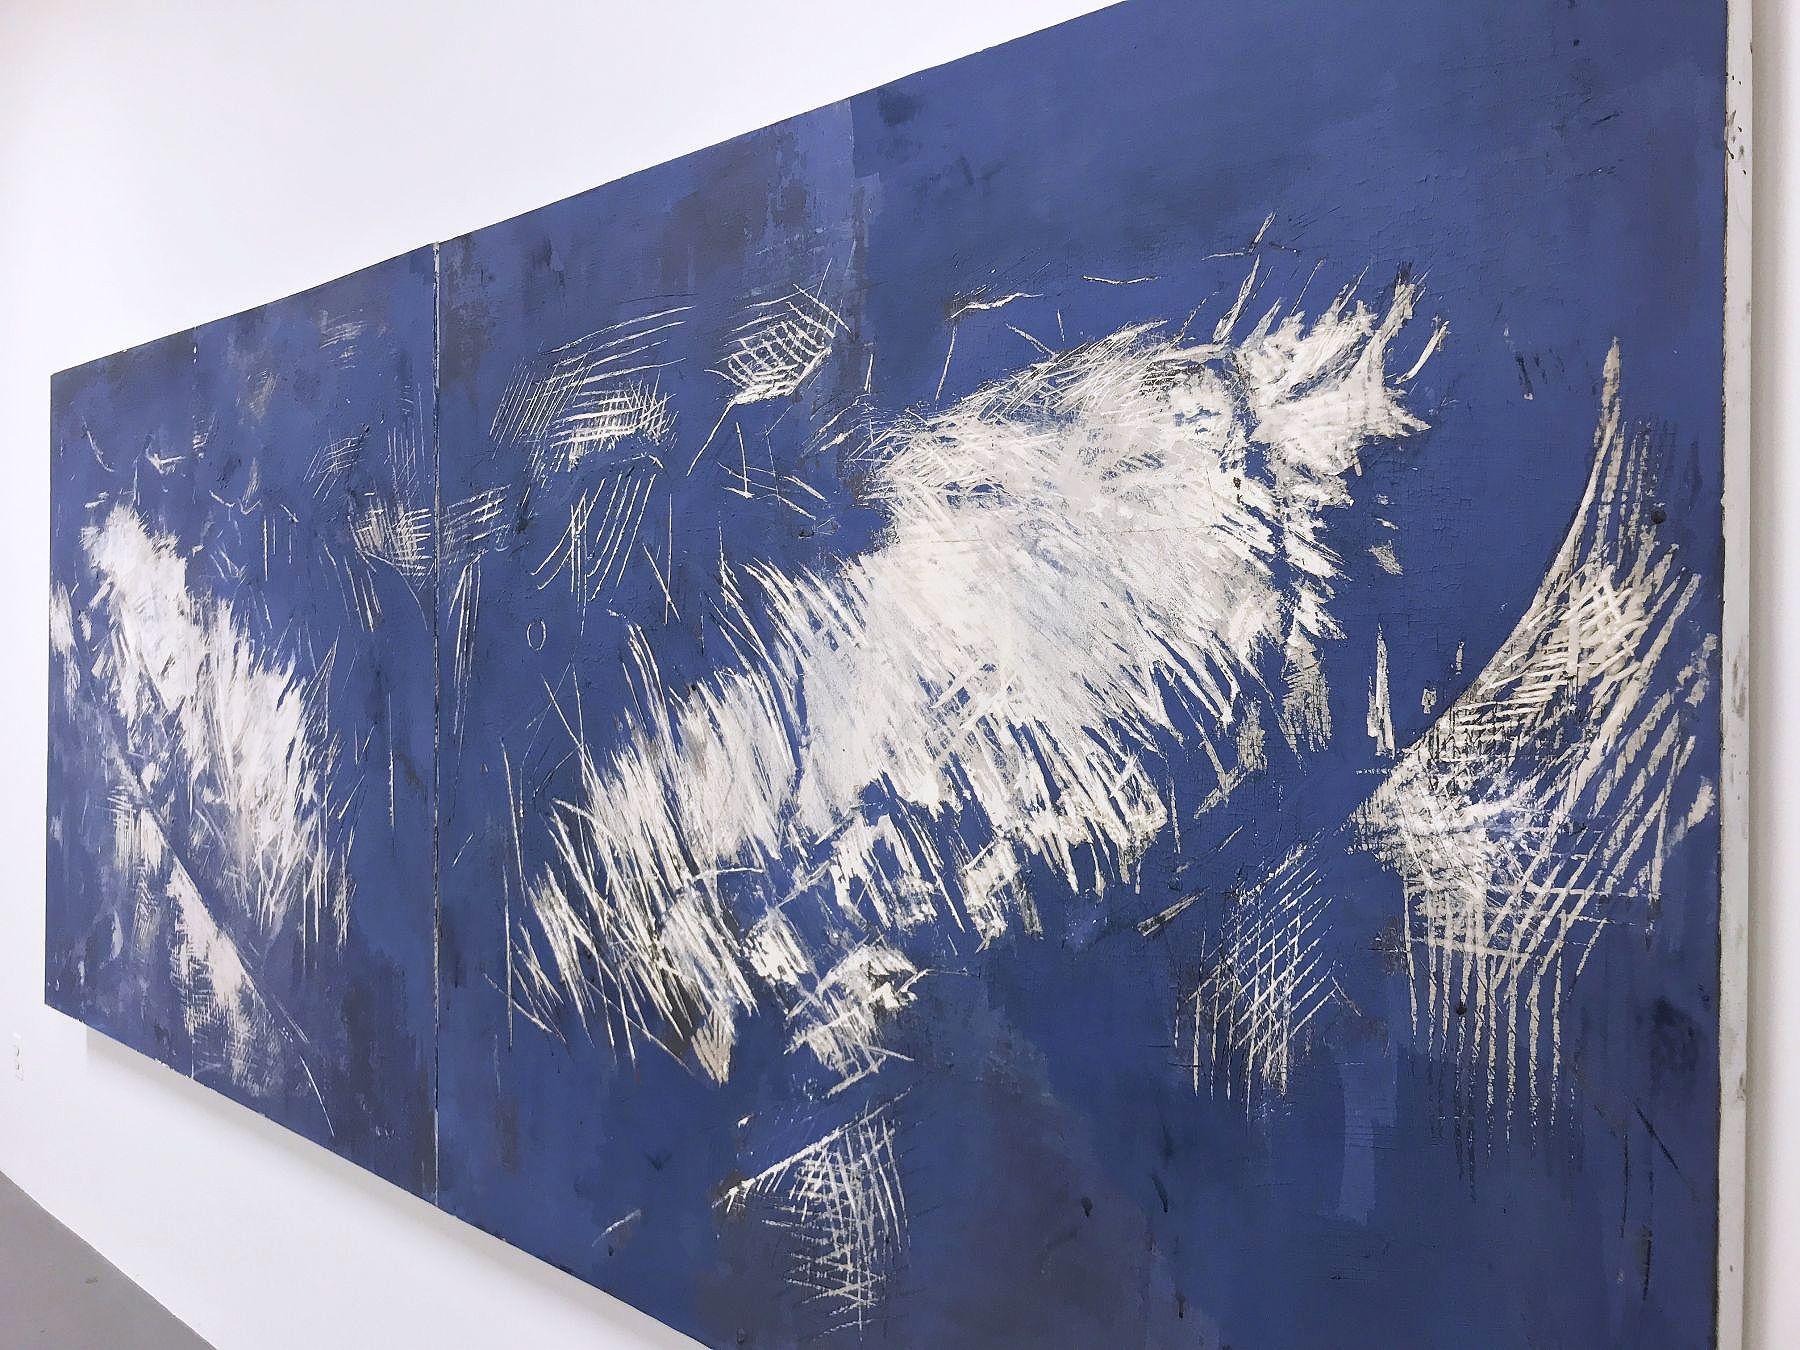 JULIETTE DUMAS, Whale Fluke (Le Grand Bleu) - Contemporary Painting by Juliette Dumas